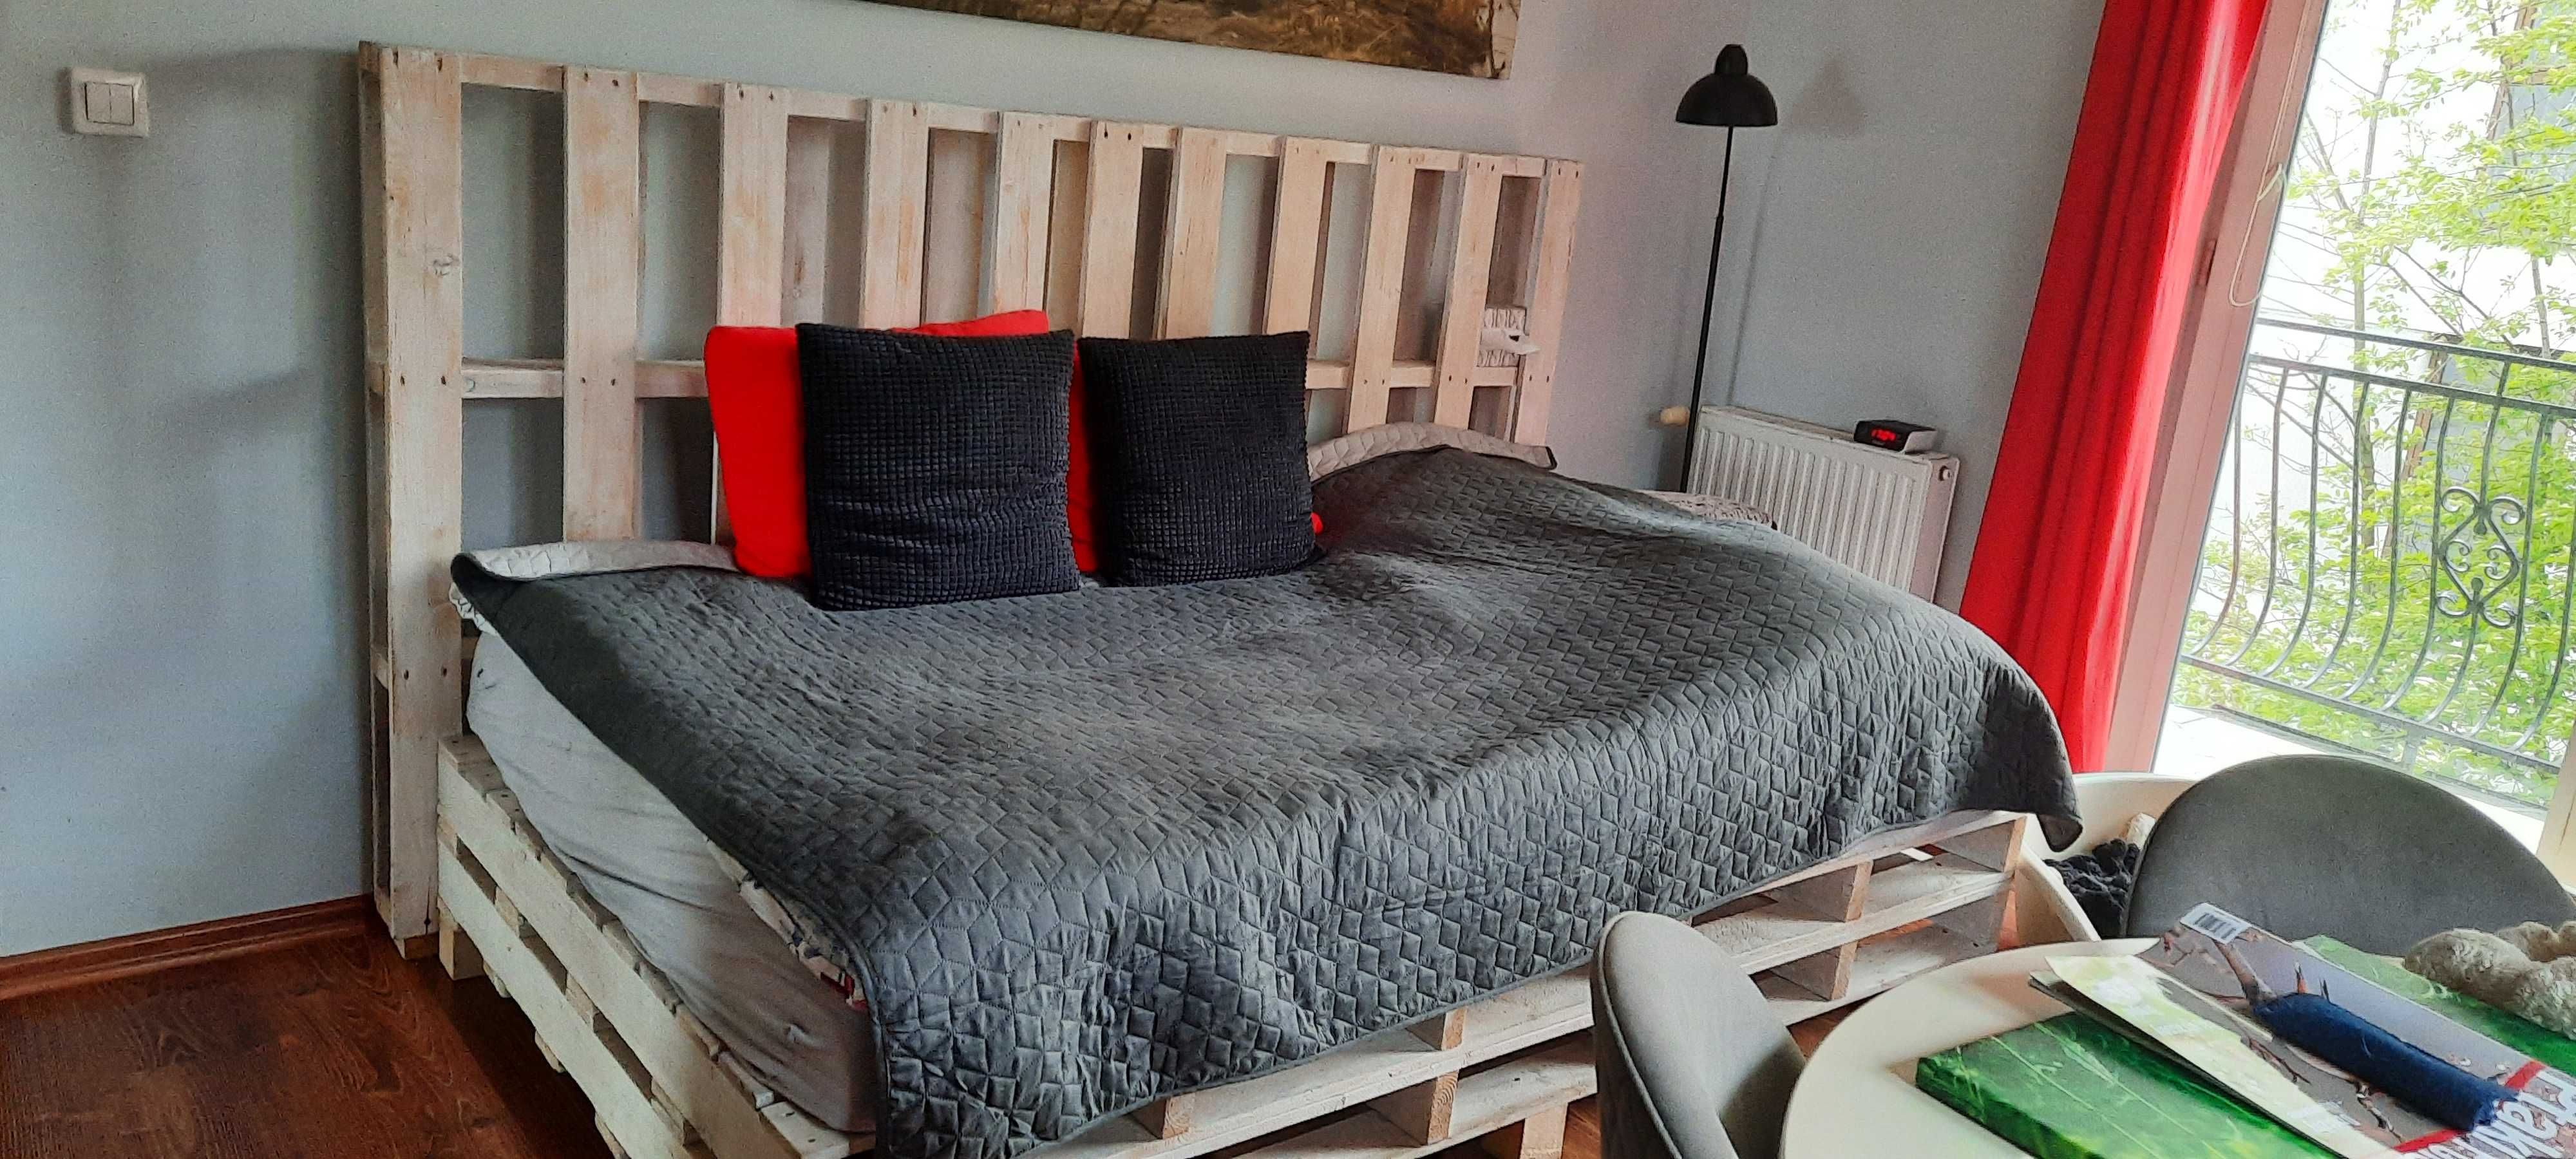 Łóżko drewniane z palet 120×200 bez materaca